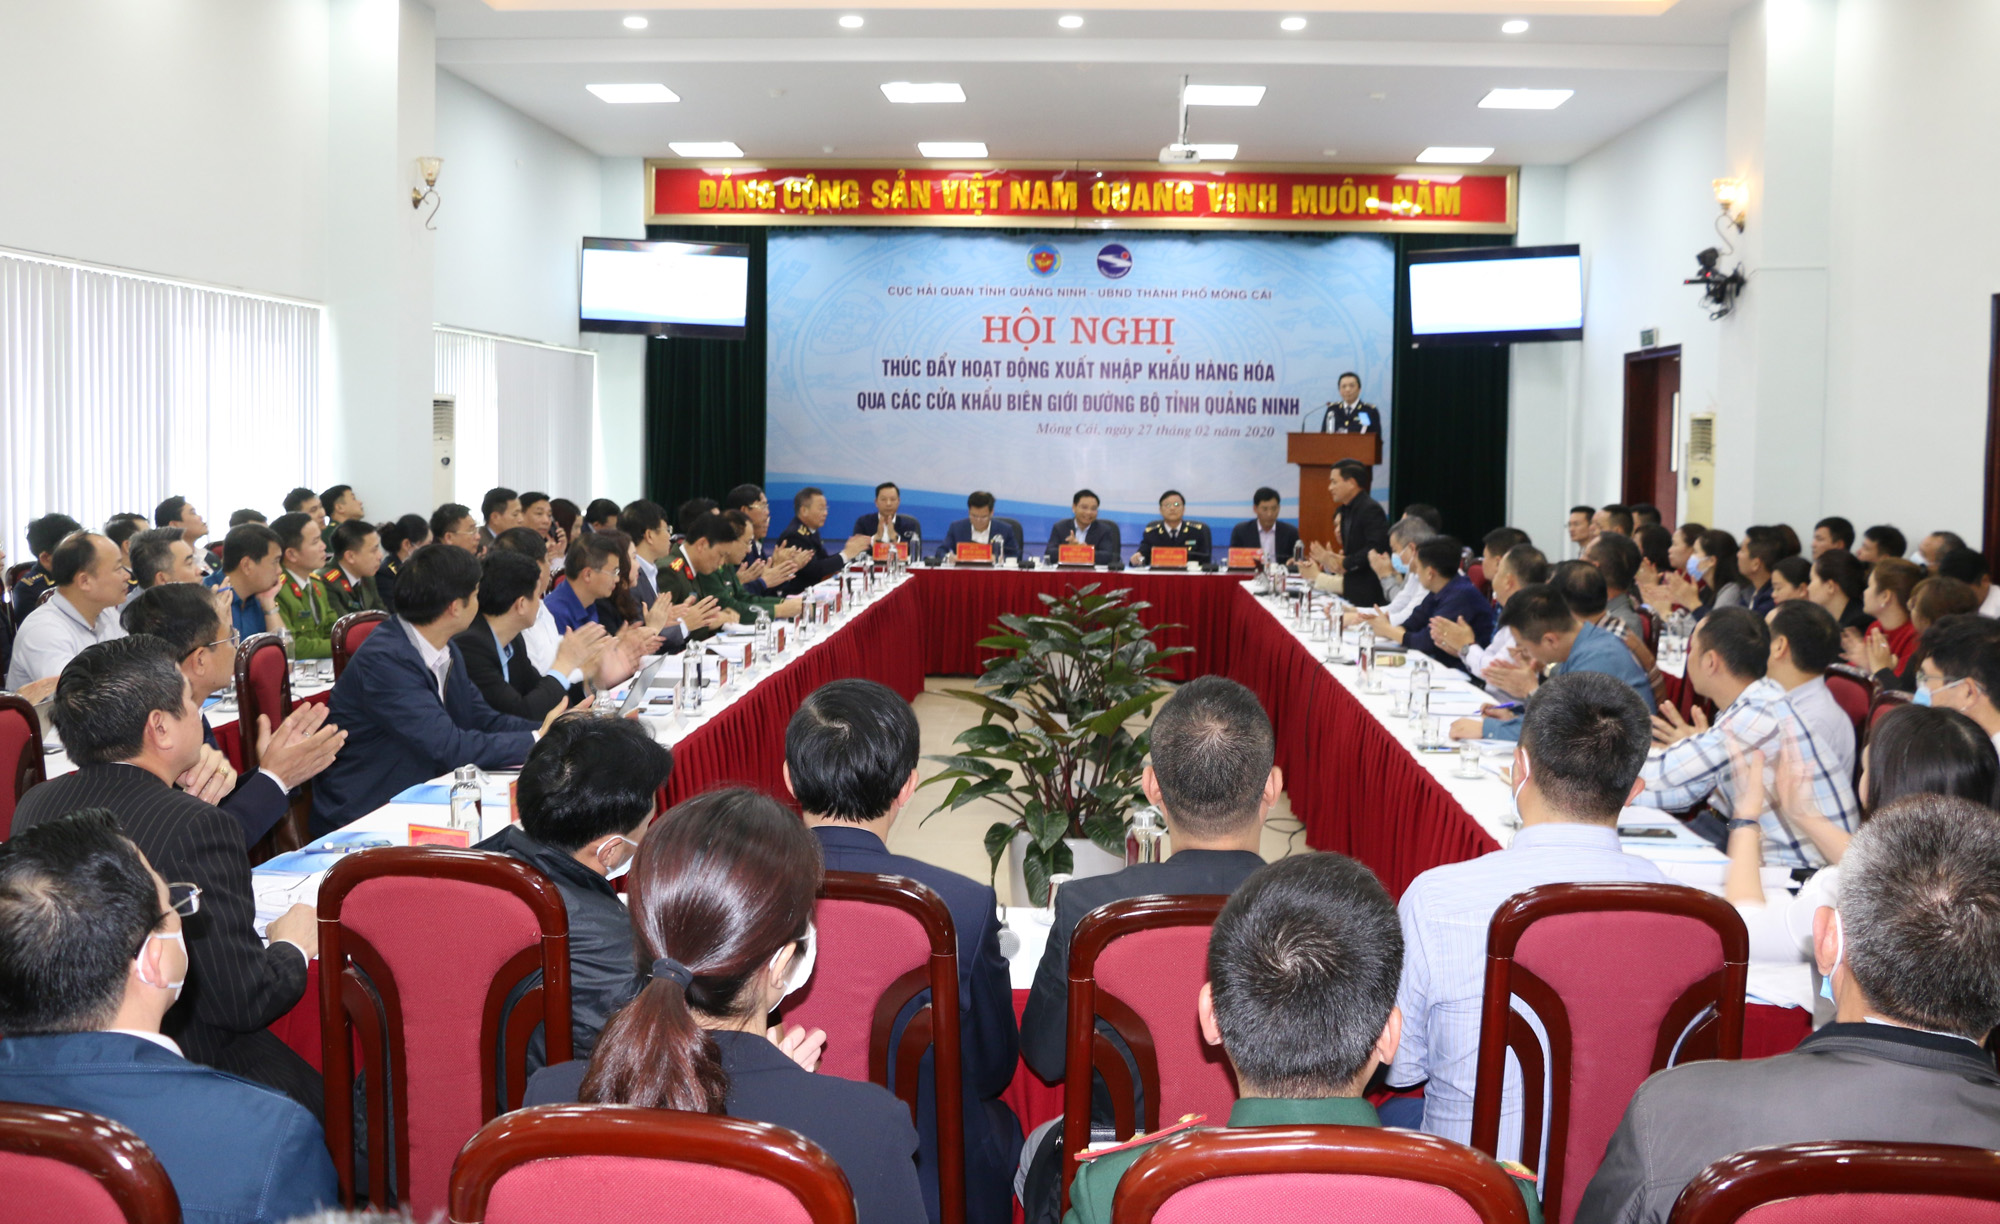 Ngày 27/2, Cục Hải quan Quảng Ninh phối hợp với UBND TP Móng Cái đã tổ chức hội nghị thúc đẩy hoạt động xuất nhập khẩu (XNK) hàng hóa qua các cửa khẩu biên giới đường bộ tỉnh Quảng Ninh